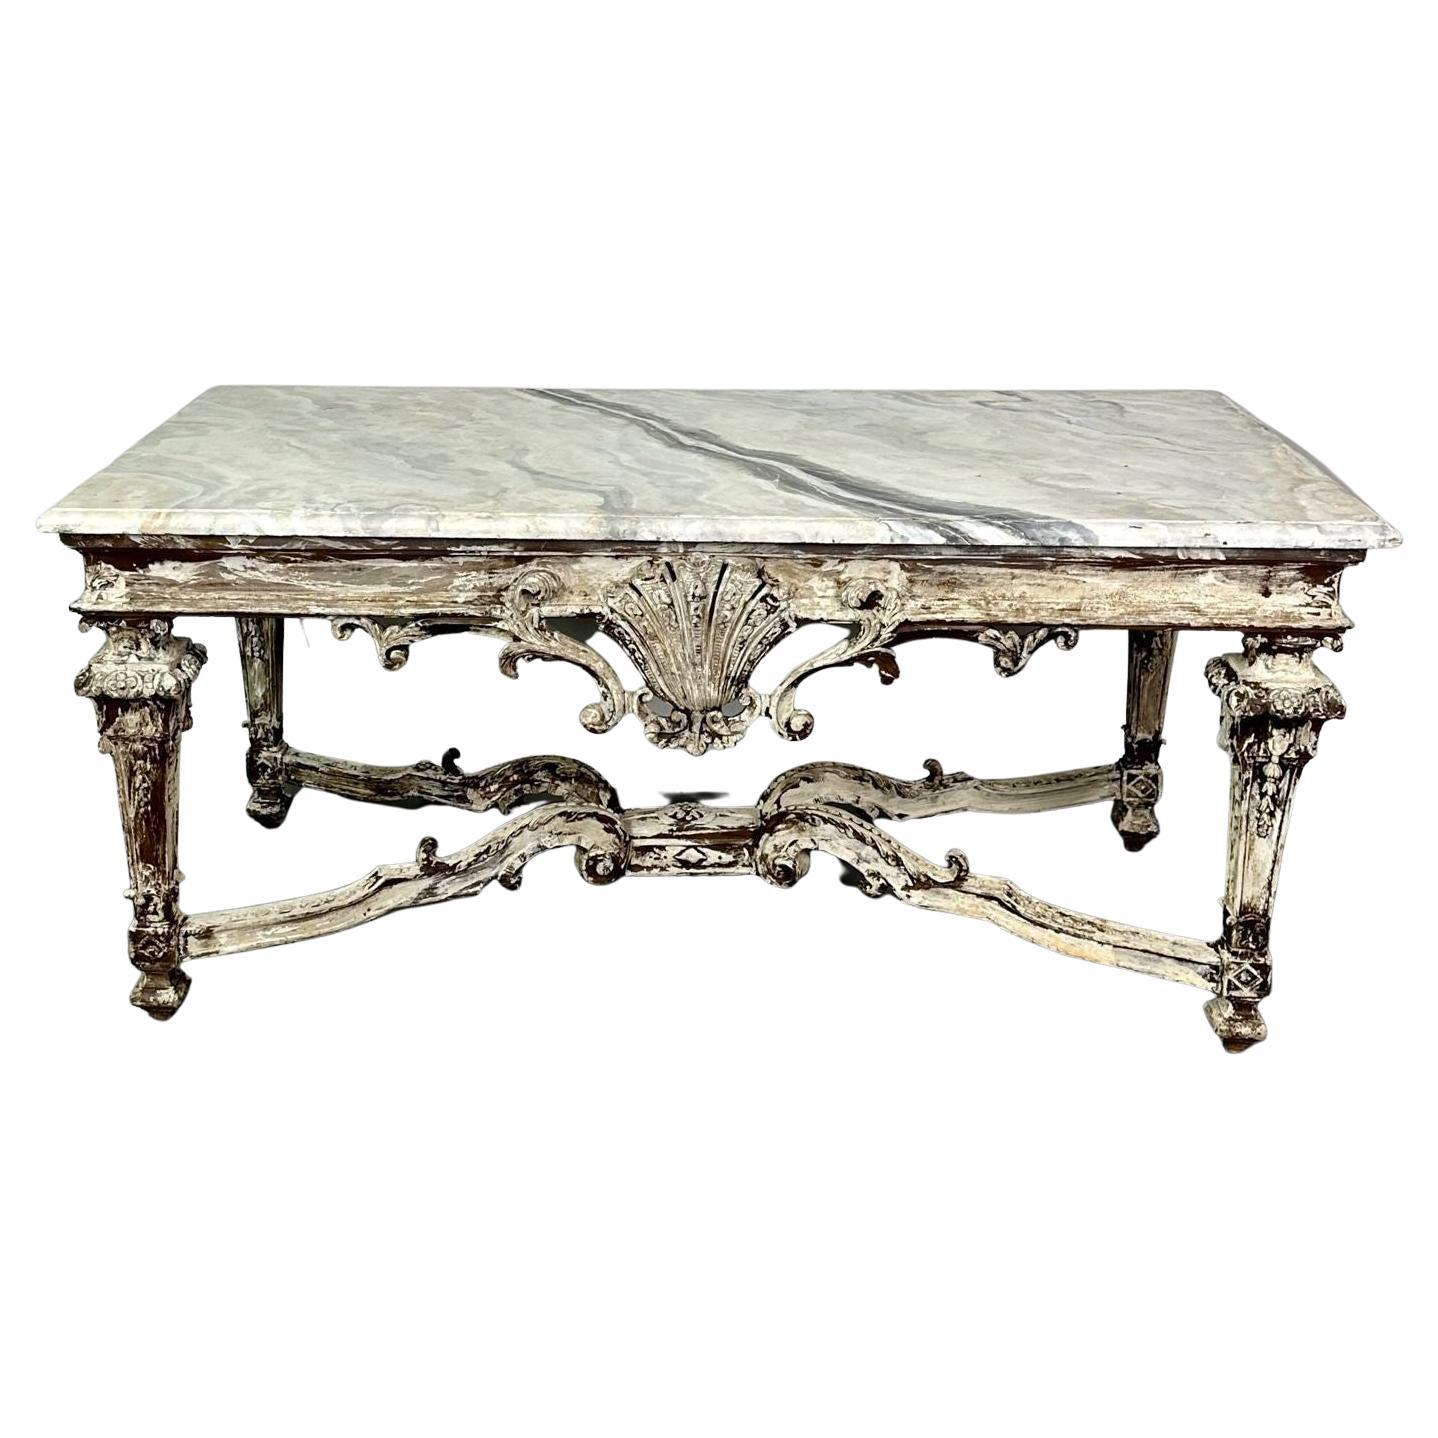 Table centrale ou de salle à manger italienne à plateau en faux marbre, style gustavien, peinte et vieillie